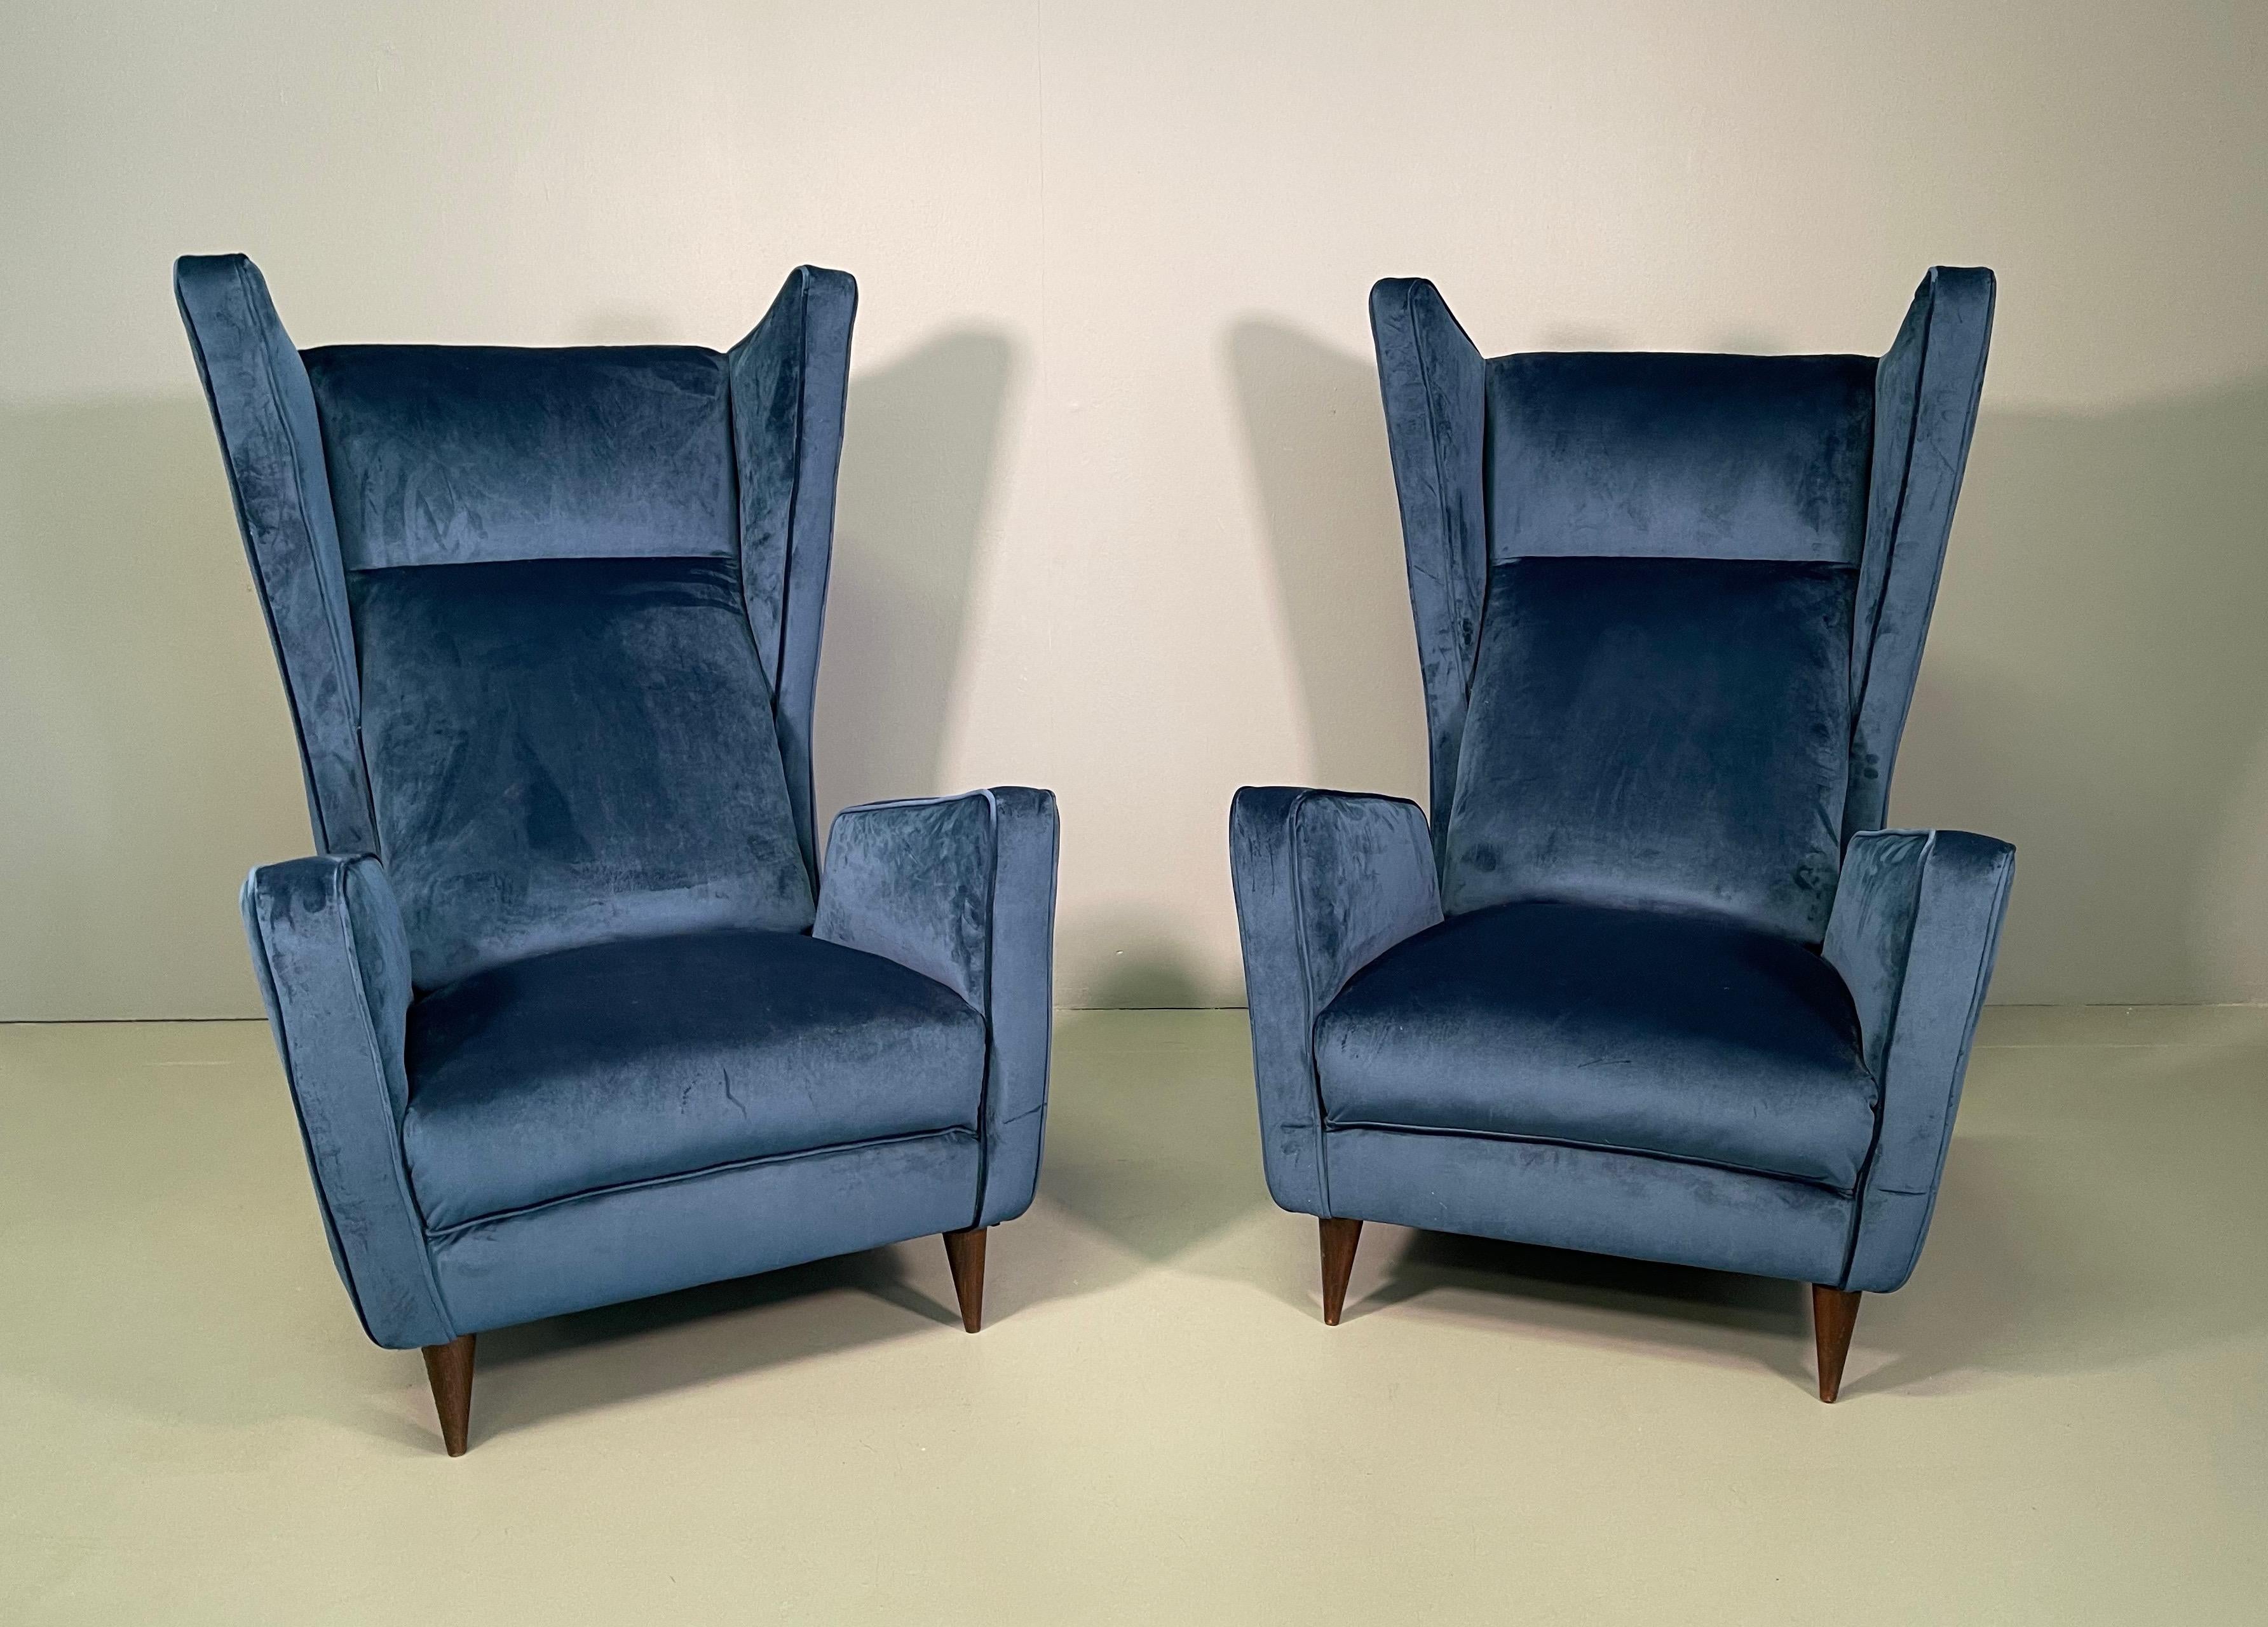 Attraktives Sesselpaar, entworfen vom Architekten Mario Oreglia Ende 1949. Die Sessel zeigen ein ikonisches geometrisches Spiel, bei dem eine verführerische, lebendige Linie zur Geltung kommt, bei dem sich Formgleichheit und strenge Linien zu einer